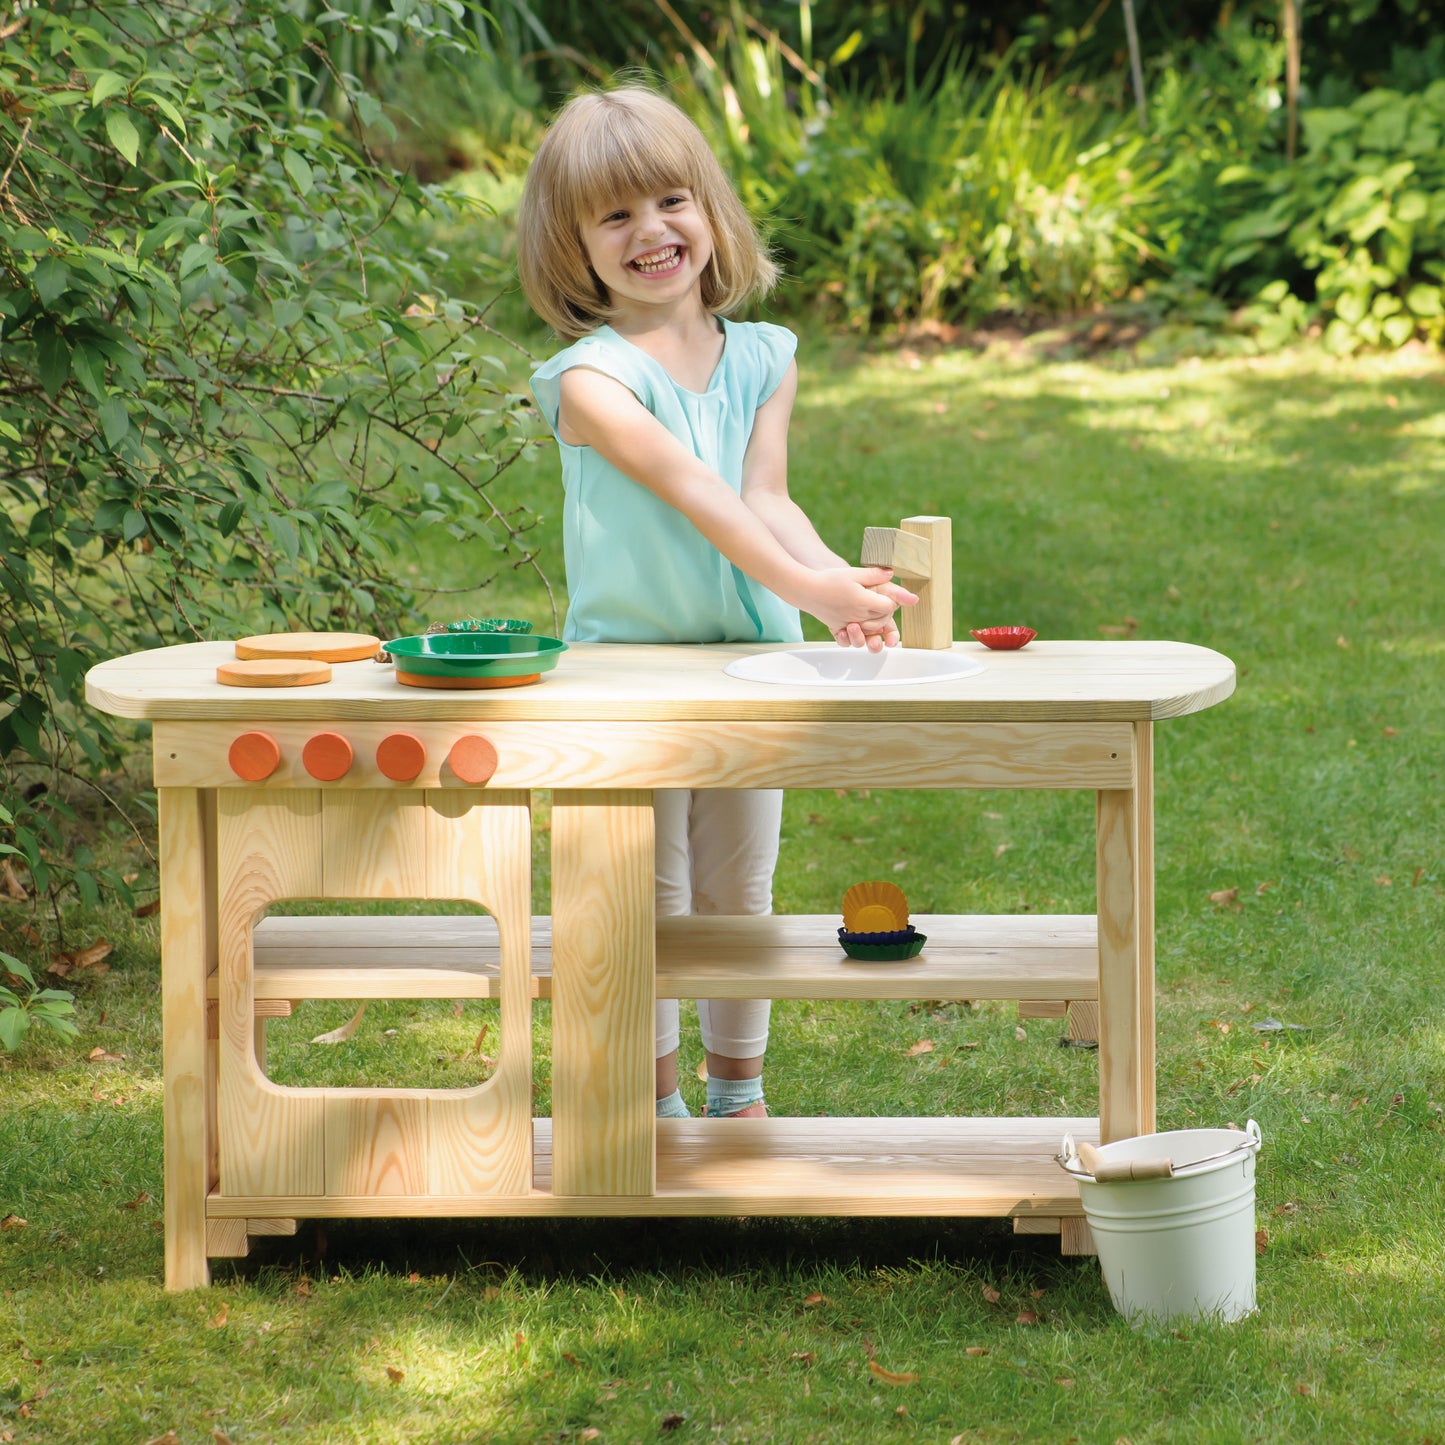 Erzi Wood Indoor / Outdoor Play Kitchen